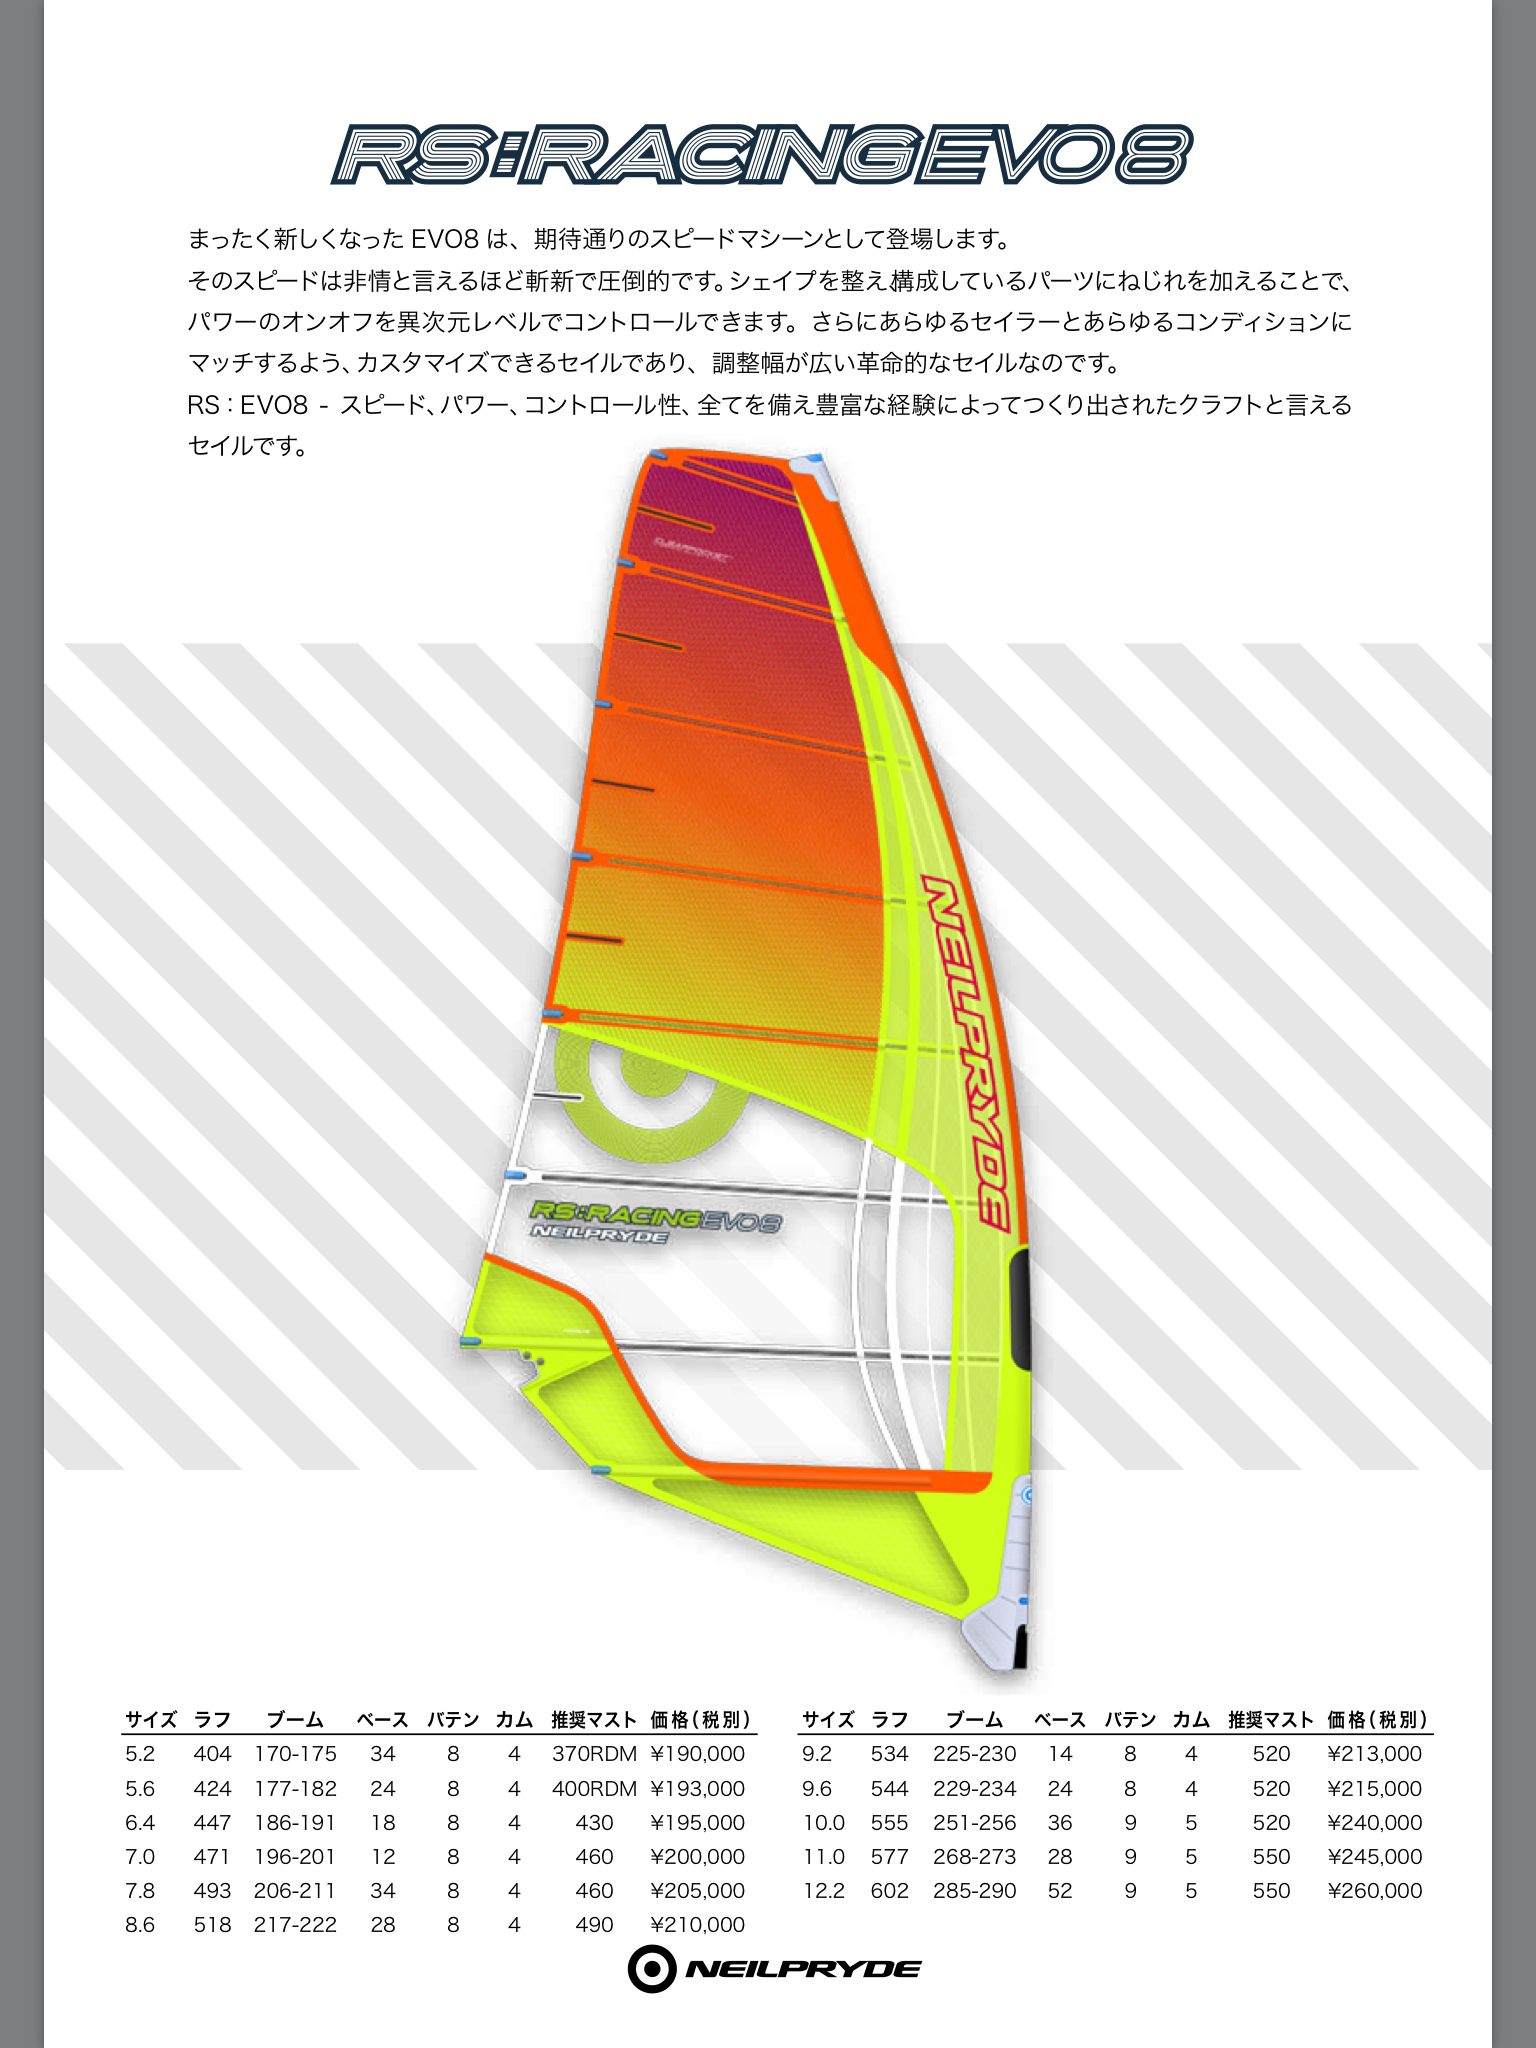 ウインドサーフィン マスト460 セイル6.4 その他スポーツ サーフィン